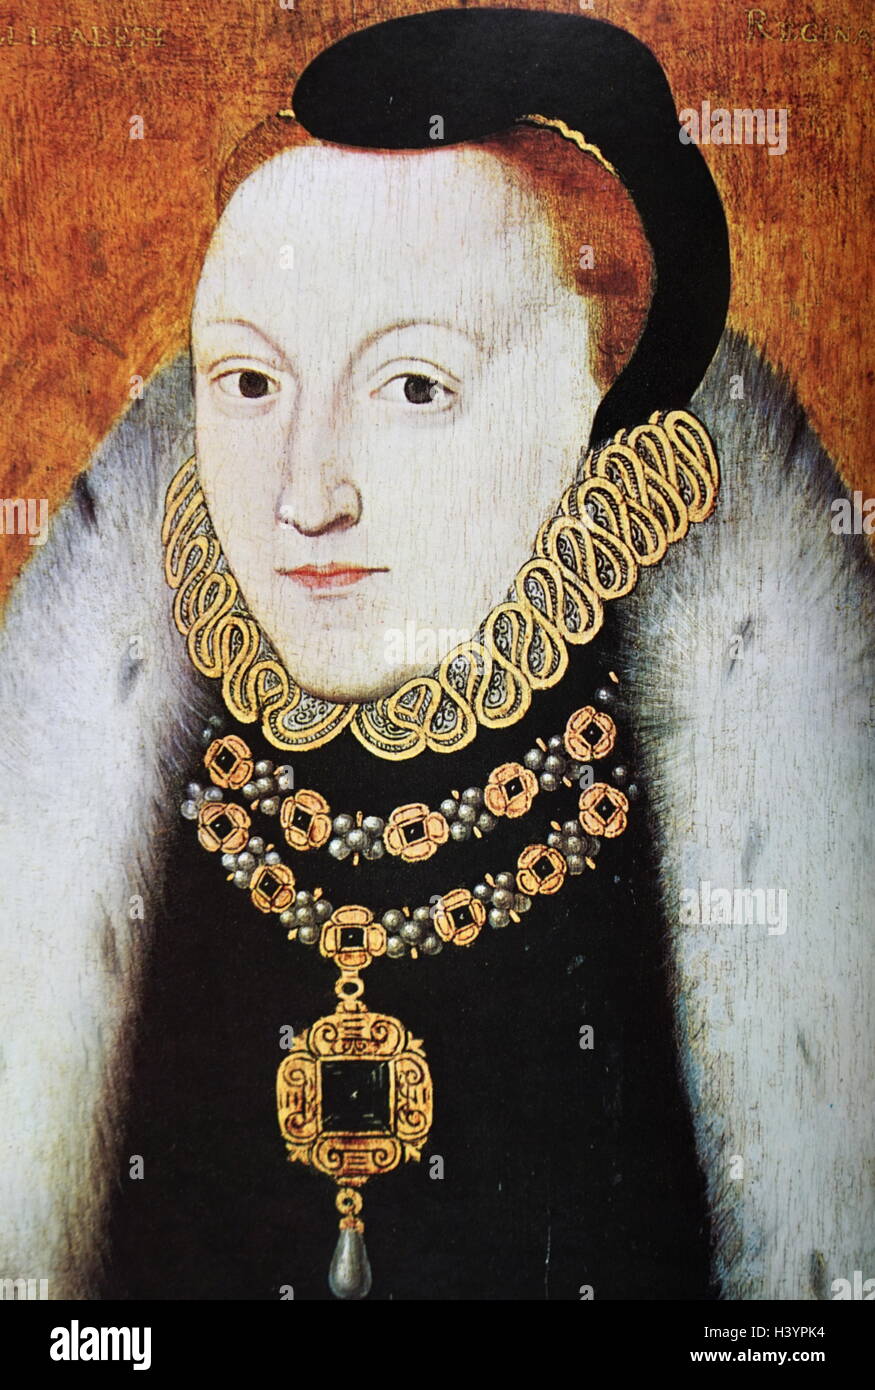 Porträt von Elizabeth i. von England (1533-1603) war Königin von England und Irland. Datiert aus dem 16. Jahrhundert Stockfoto